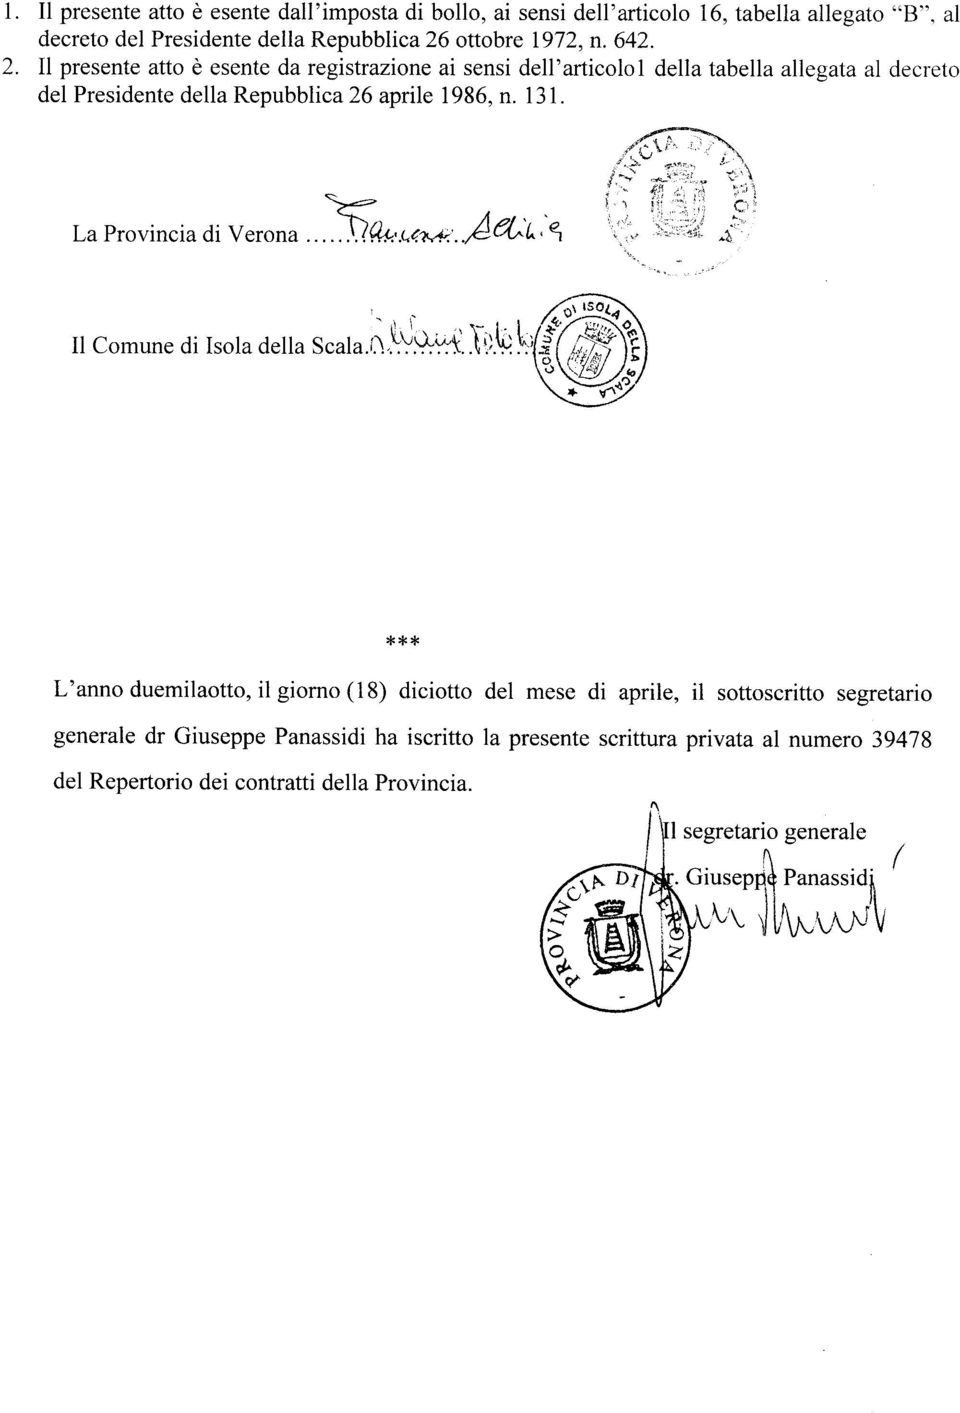 La Provincia di Verona... : 91 Il Comune di Isola della Scala.iN^:'. ^`.